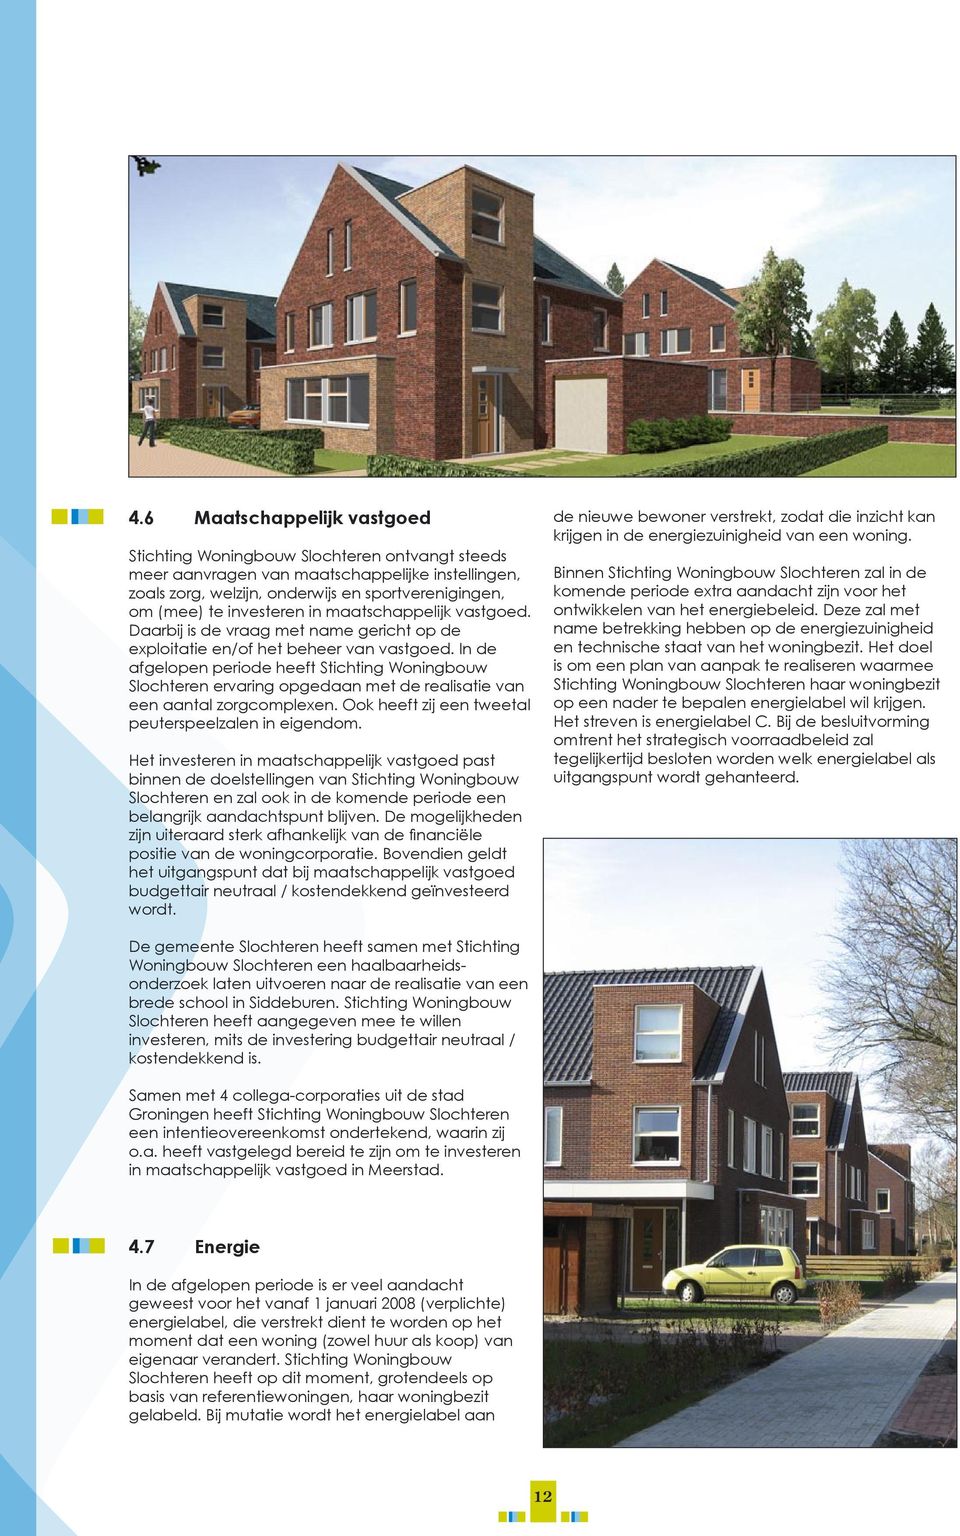 In de afgelopen periode heeft Stichting Woningbouw Slochteren ervaring opgedaan met de realisatie van een aantal zorgcomplexen. Ook heeft zij een tweetal peuterspeelzalen in eigendom.